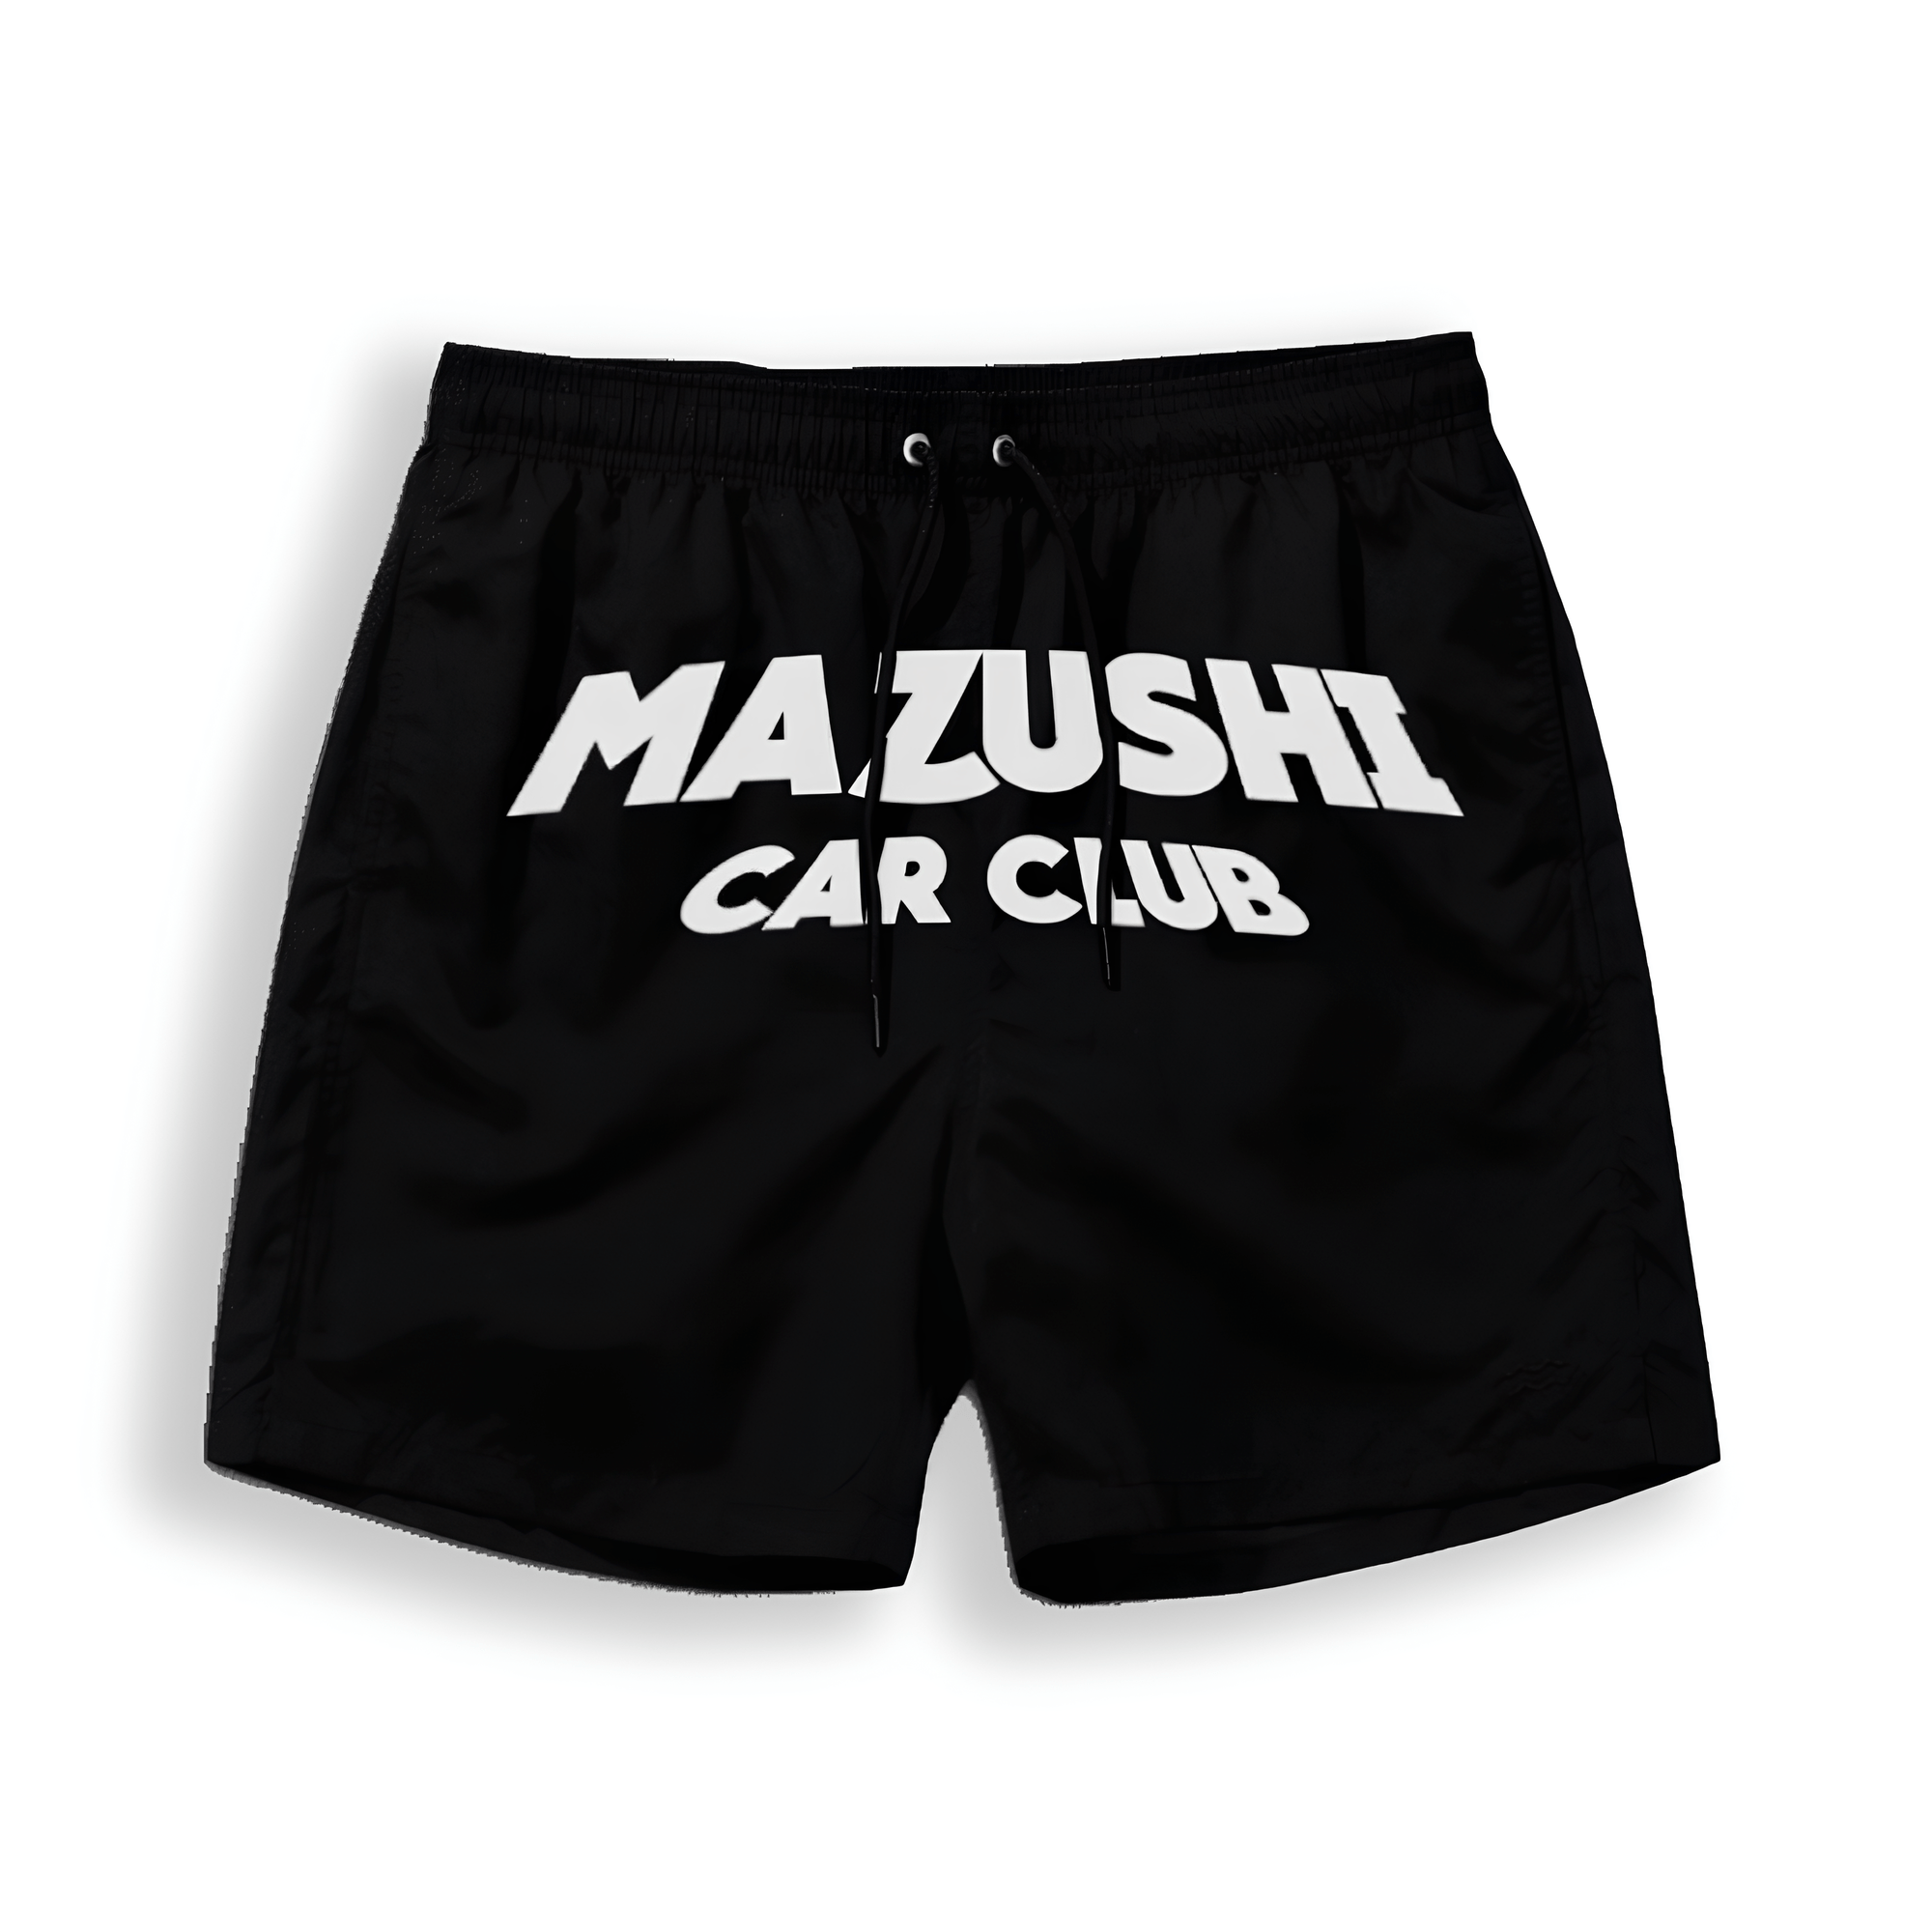 Mazushi Car Club Shorts - Mazushi